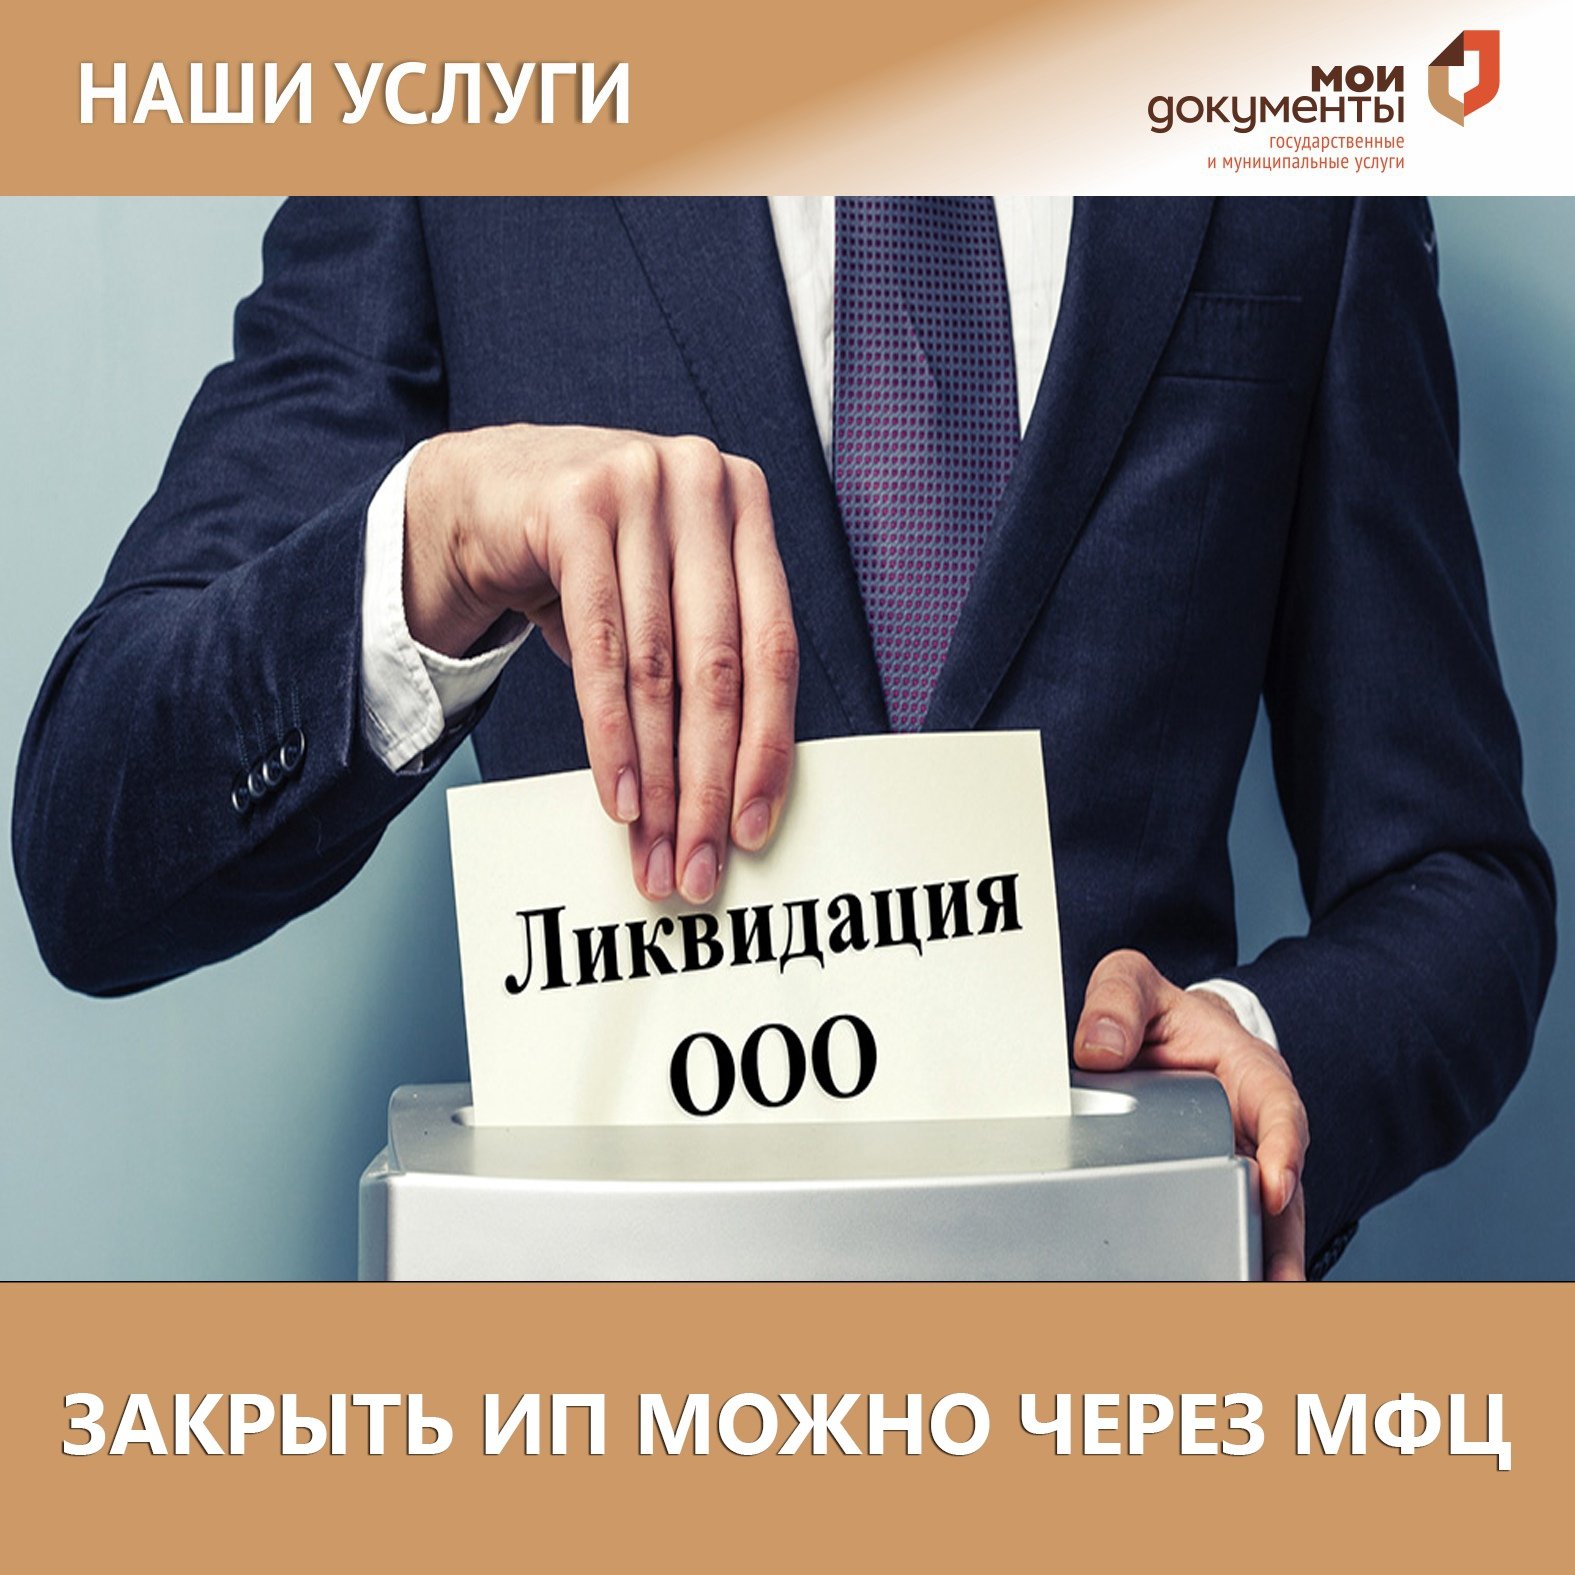 Ликвидация компании стоимость uradres moscow ru отзывы